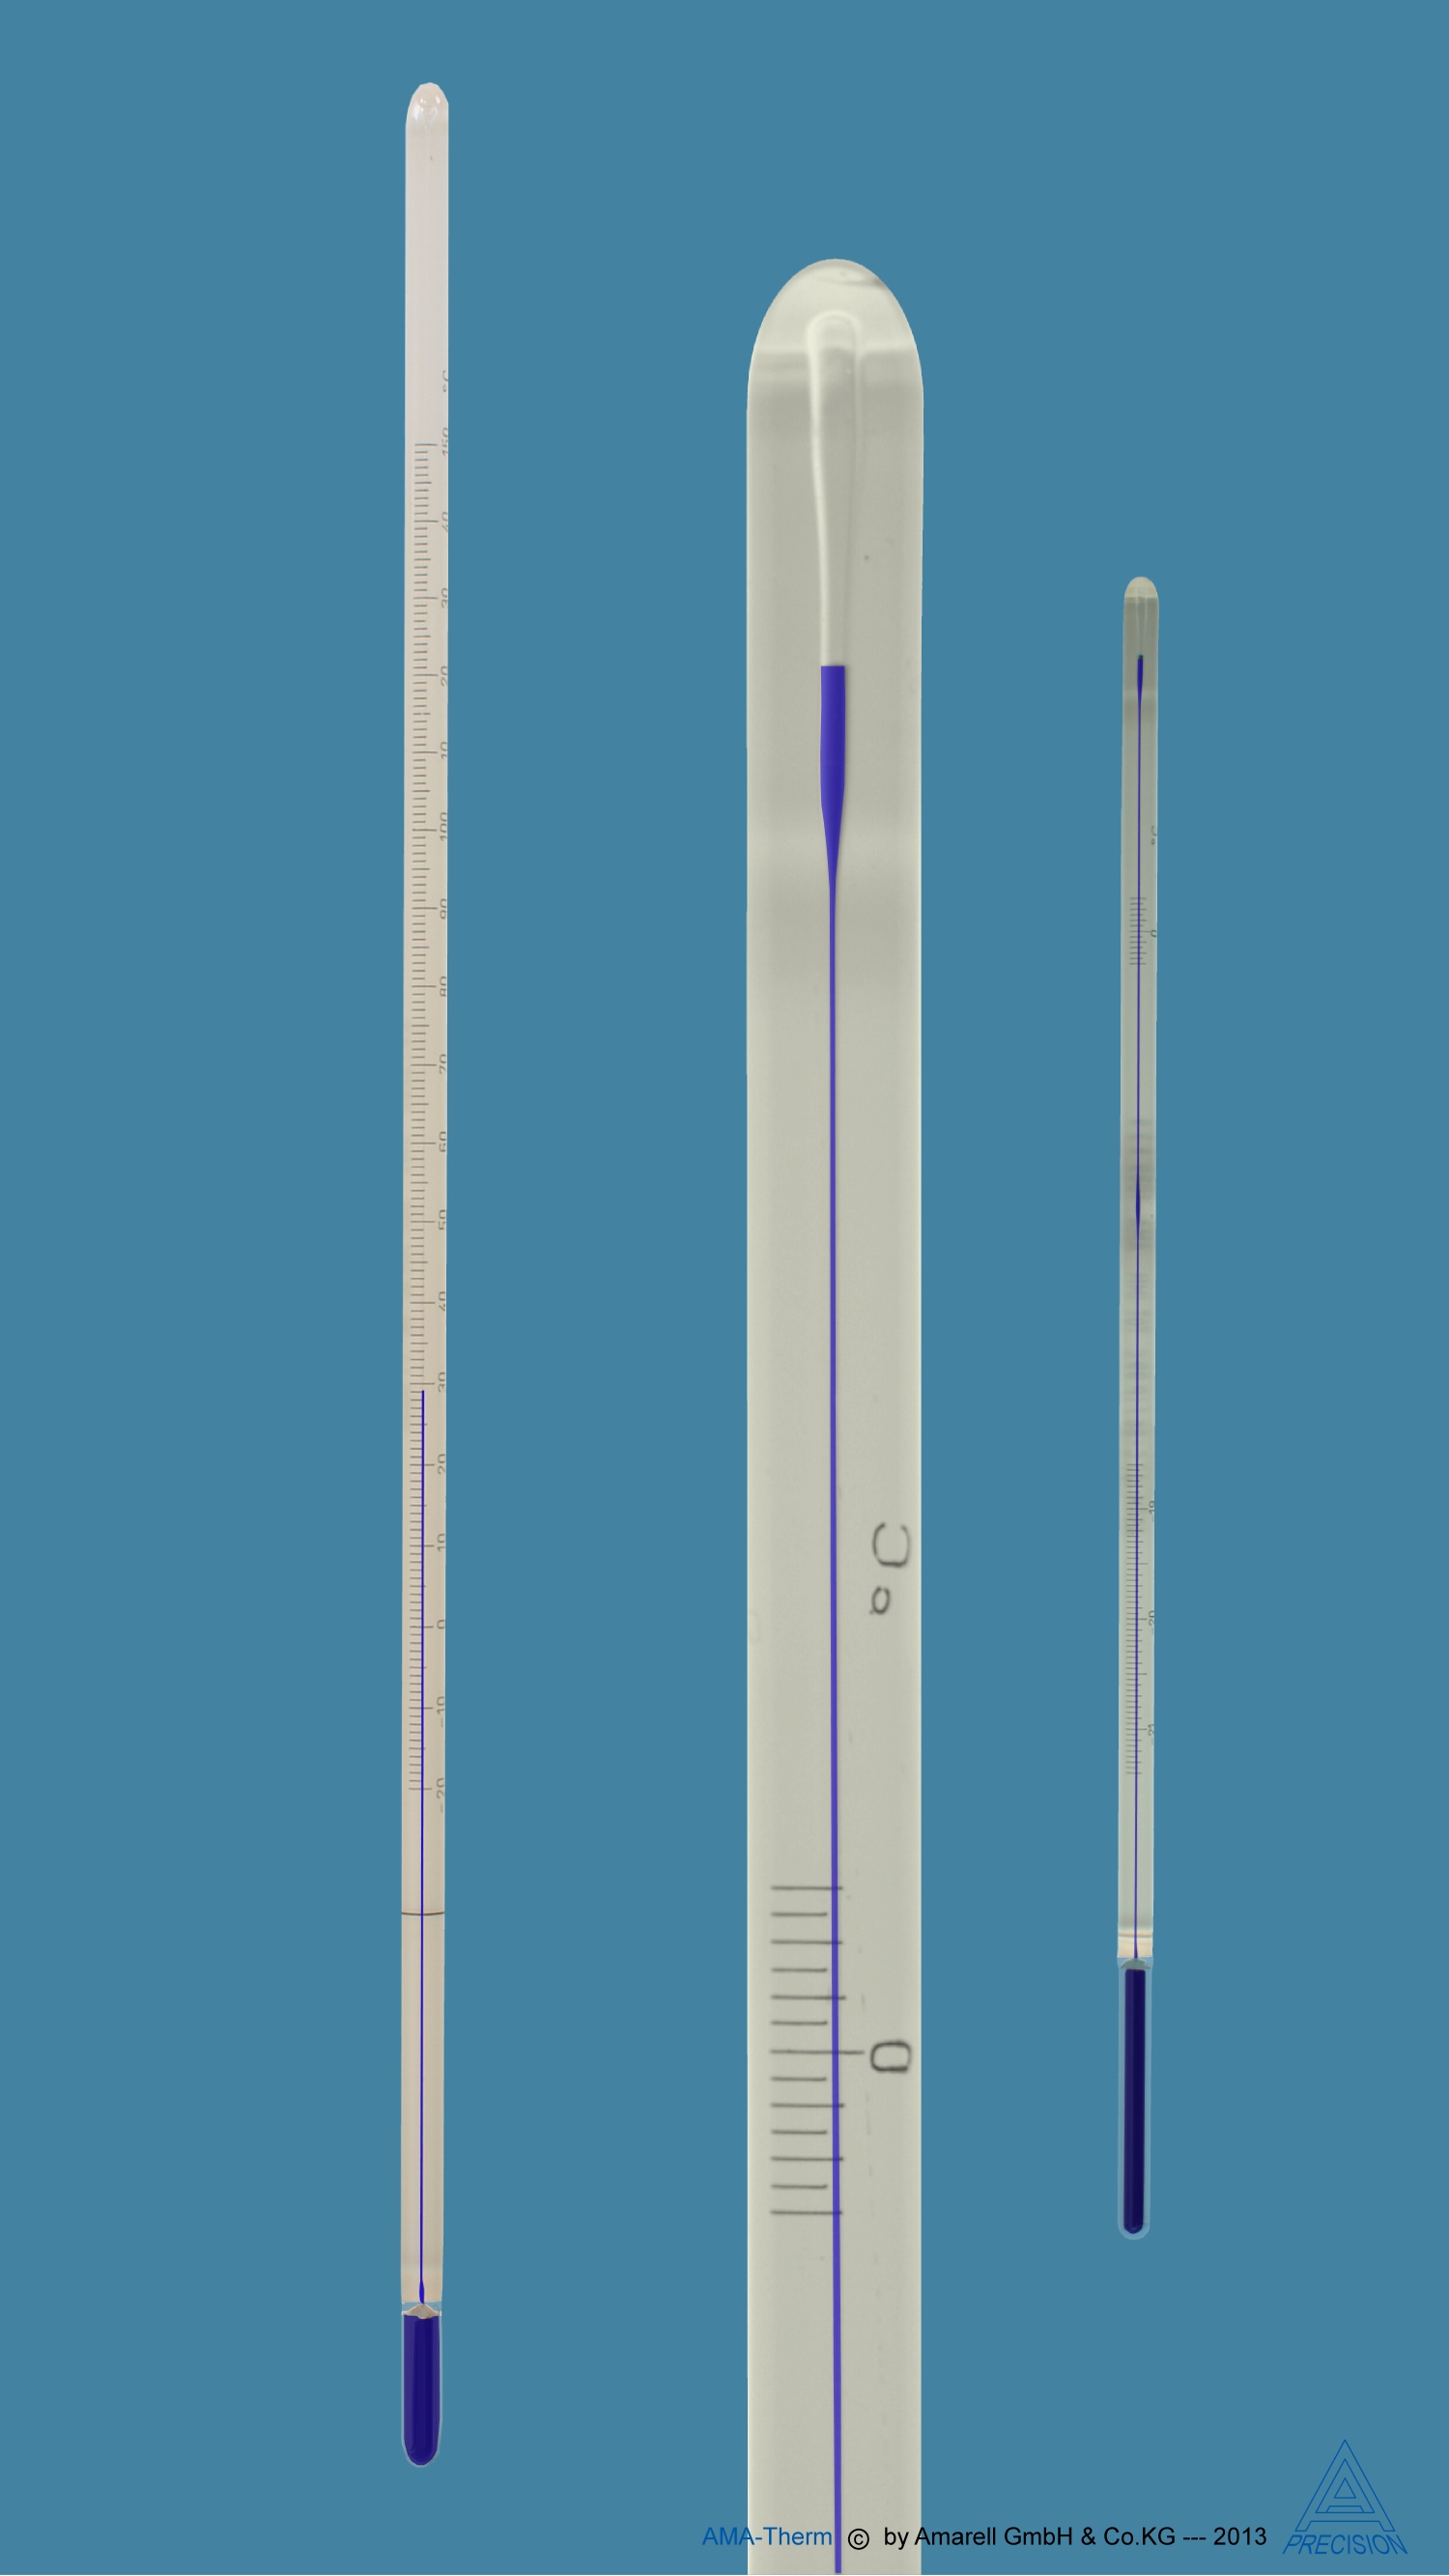 ASTM Thermometer, S64C, white backed, 25 + 55 : 0.1 deg C